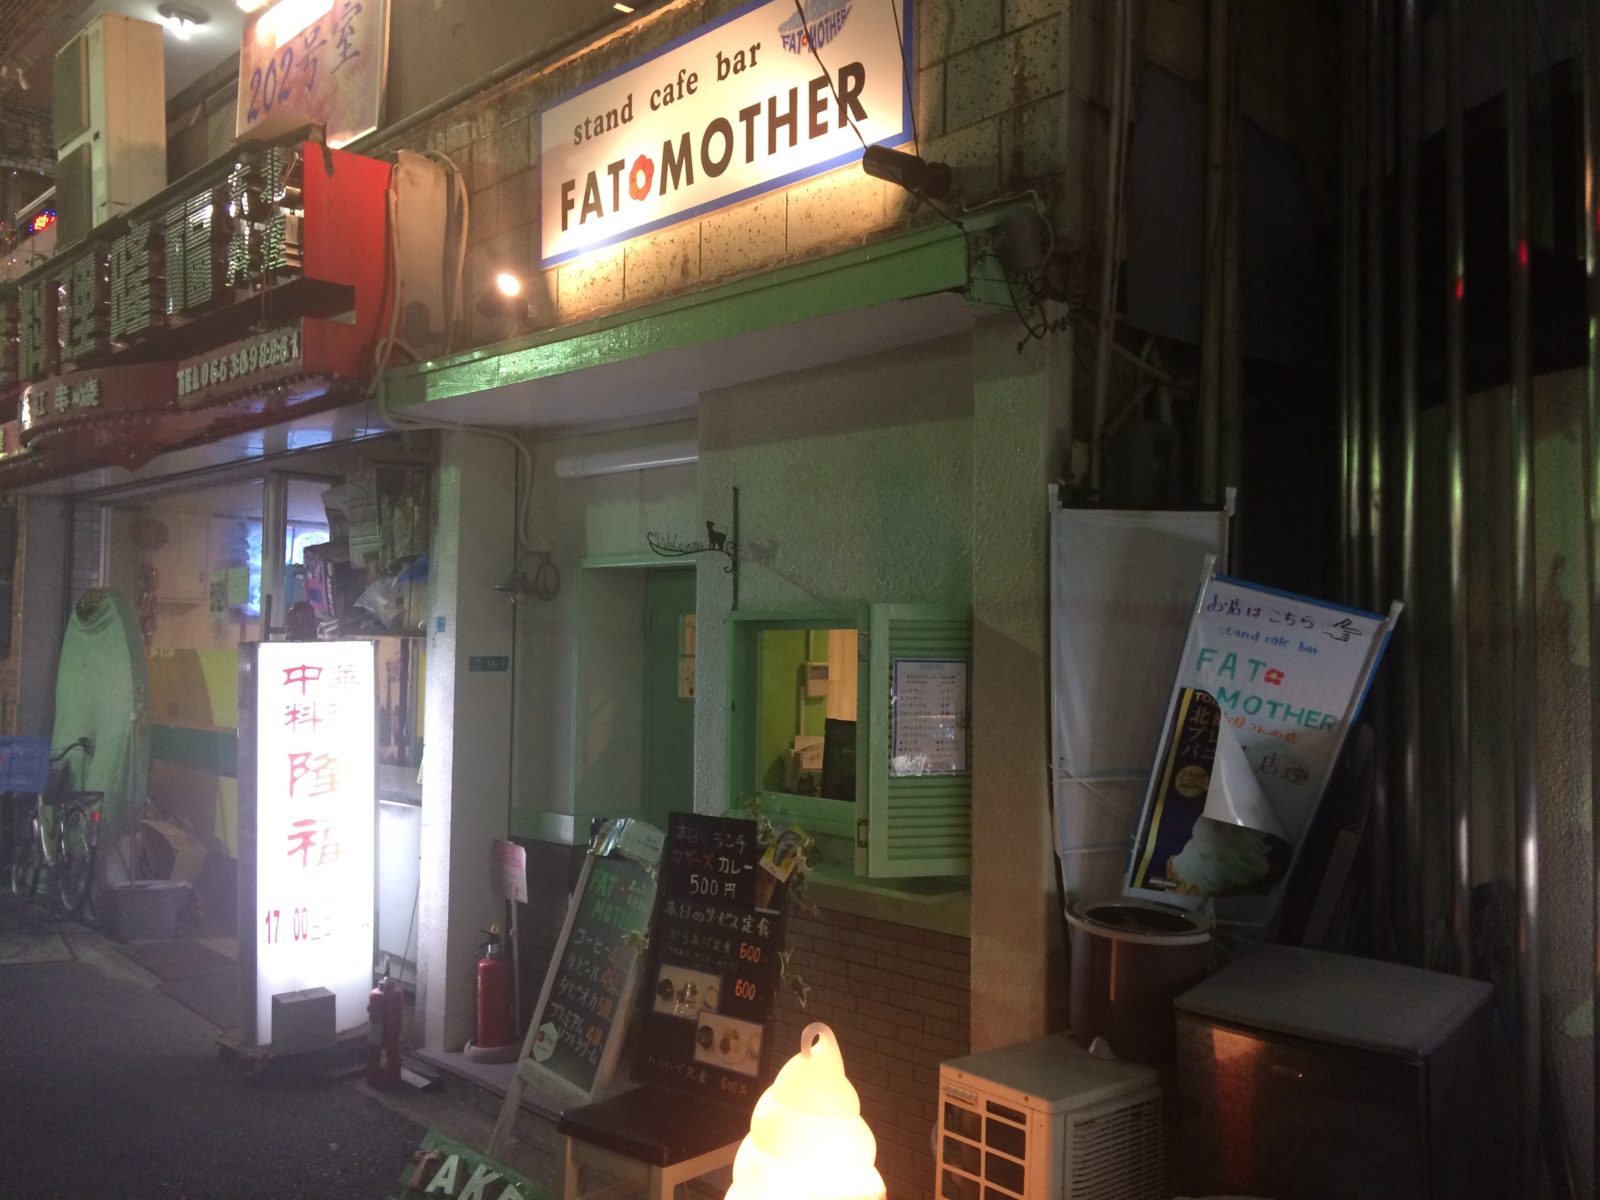 十三西栄町商店会に Stand Cafe Bar Fat Mother さんというカフェバーがオープン 十三エクスプレス